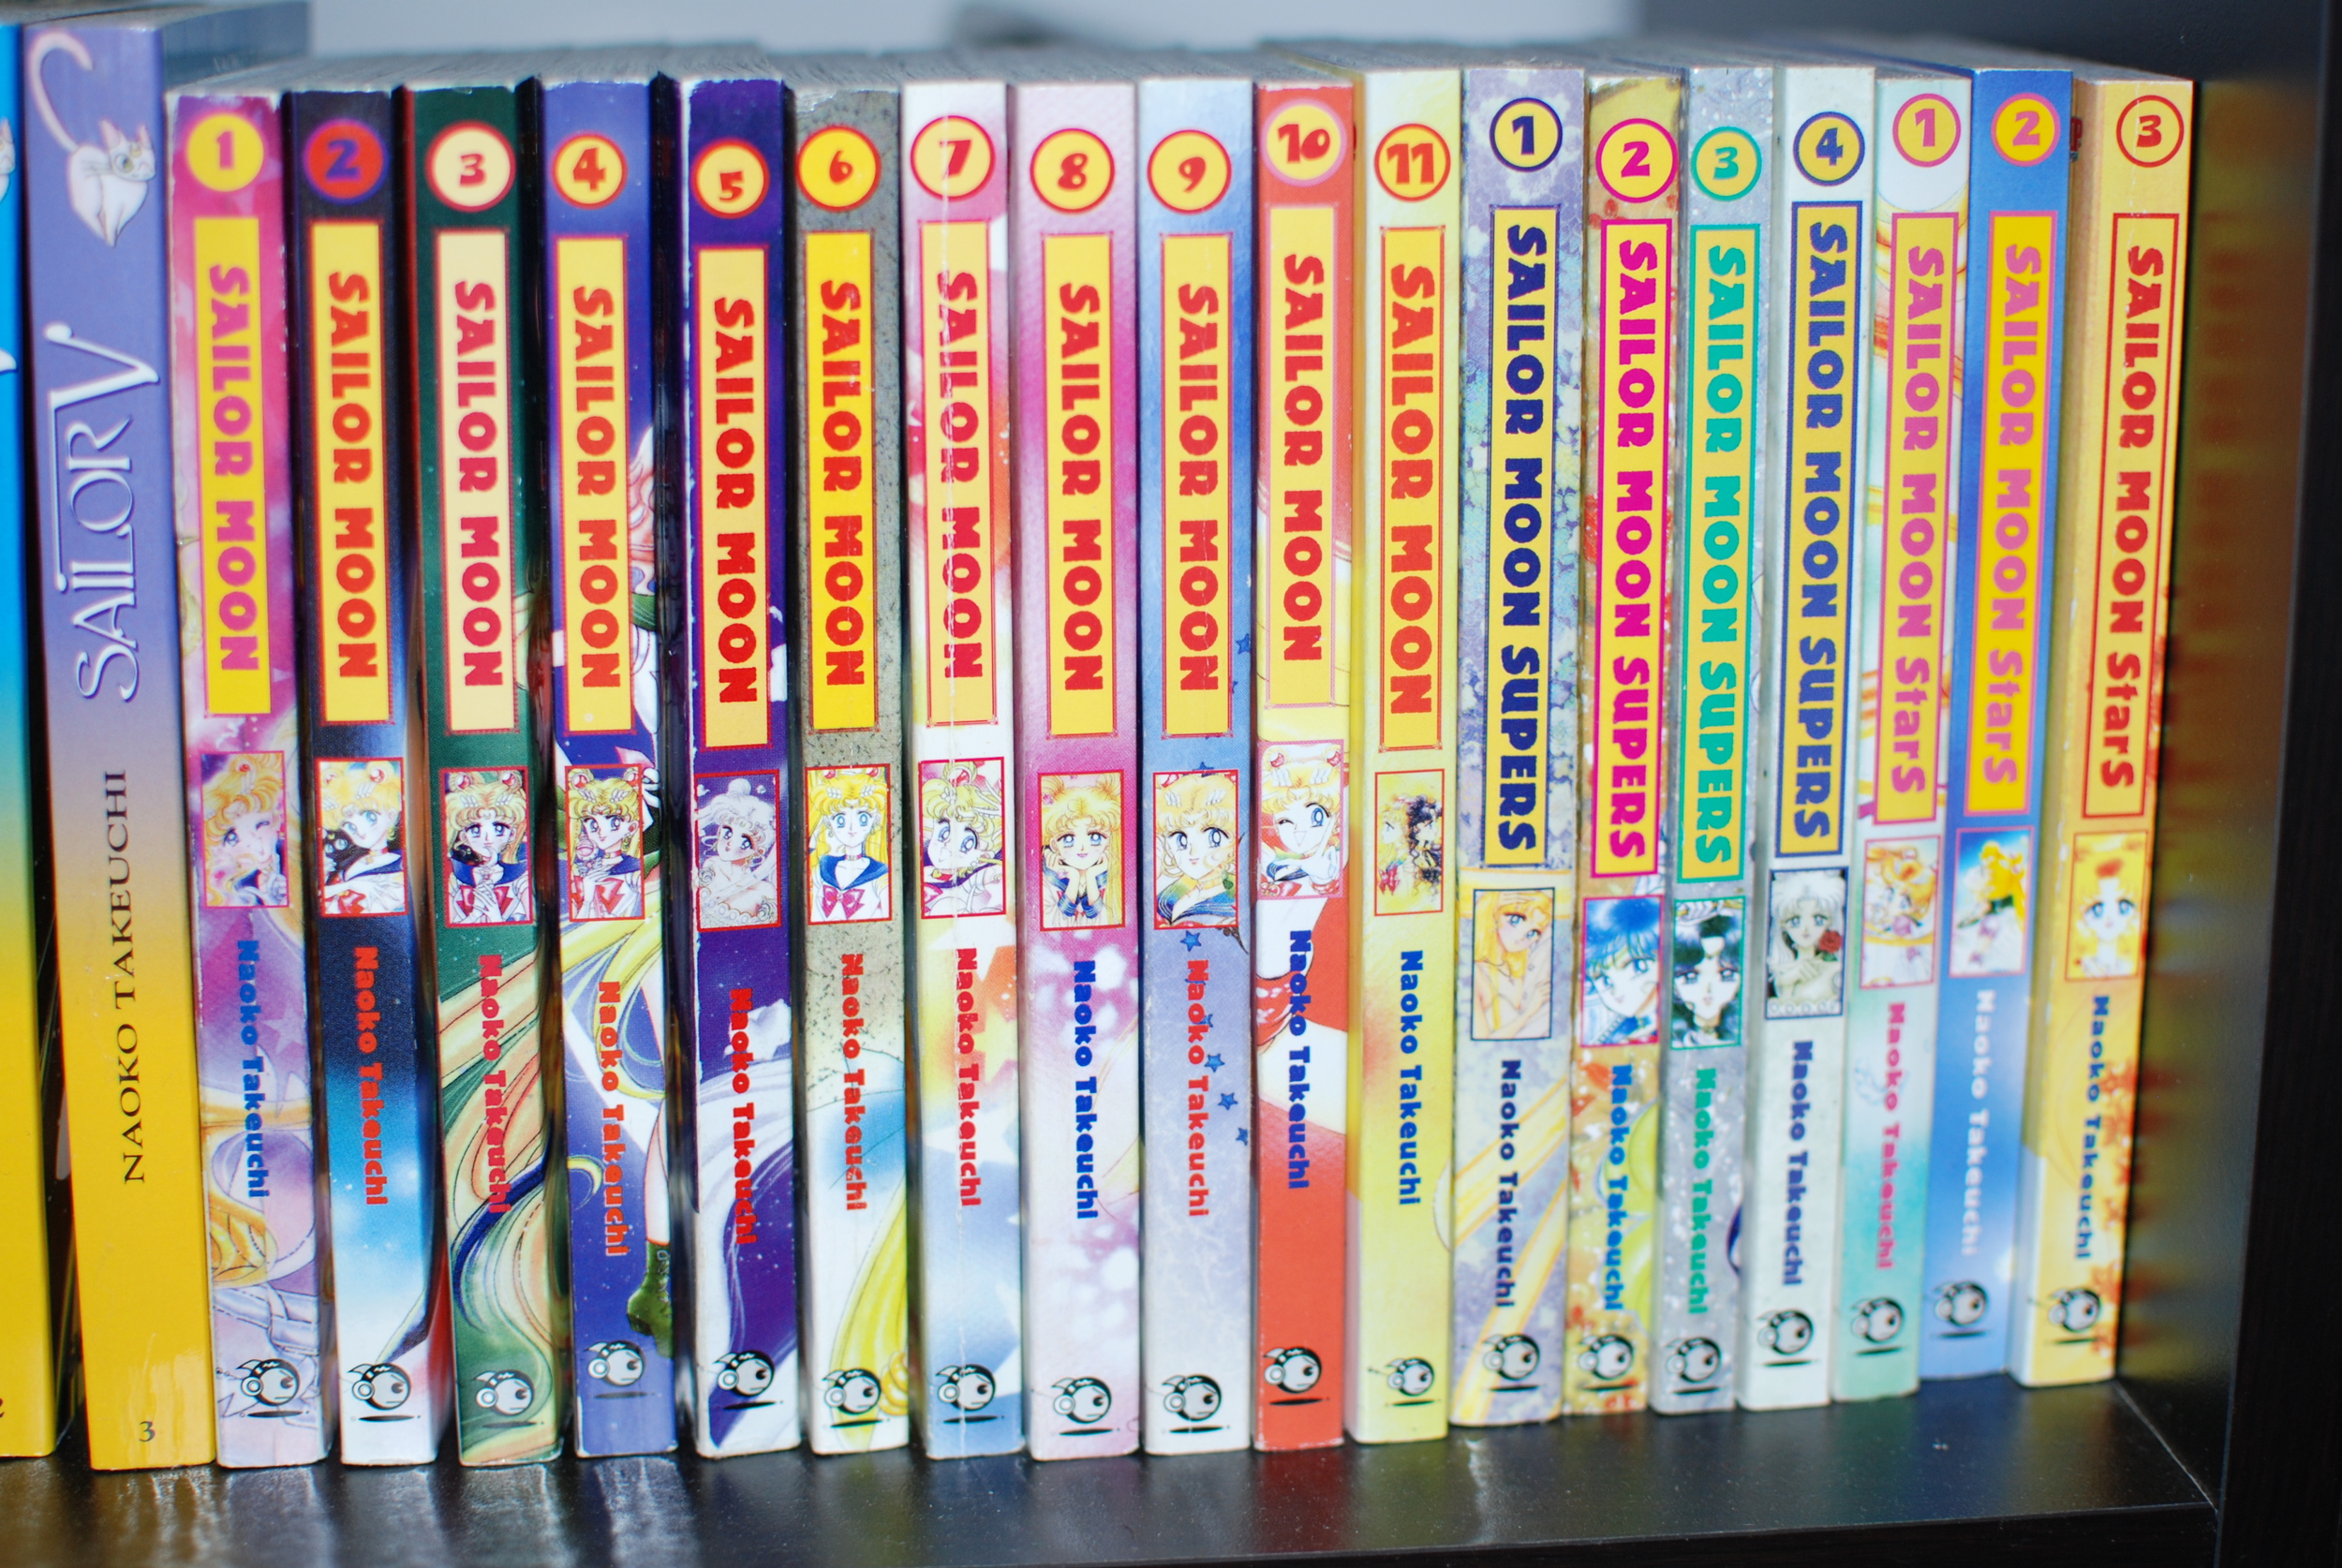 The Sailor Moon Manga Collection